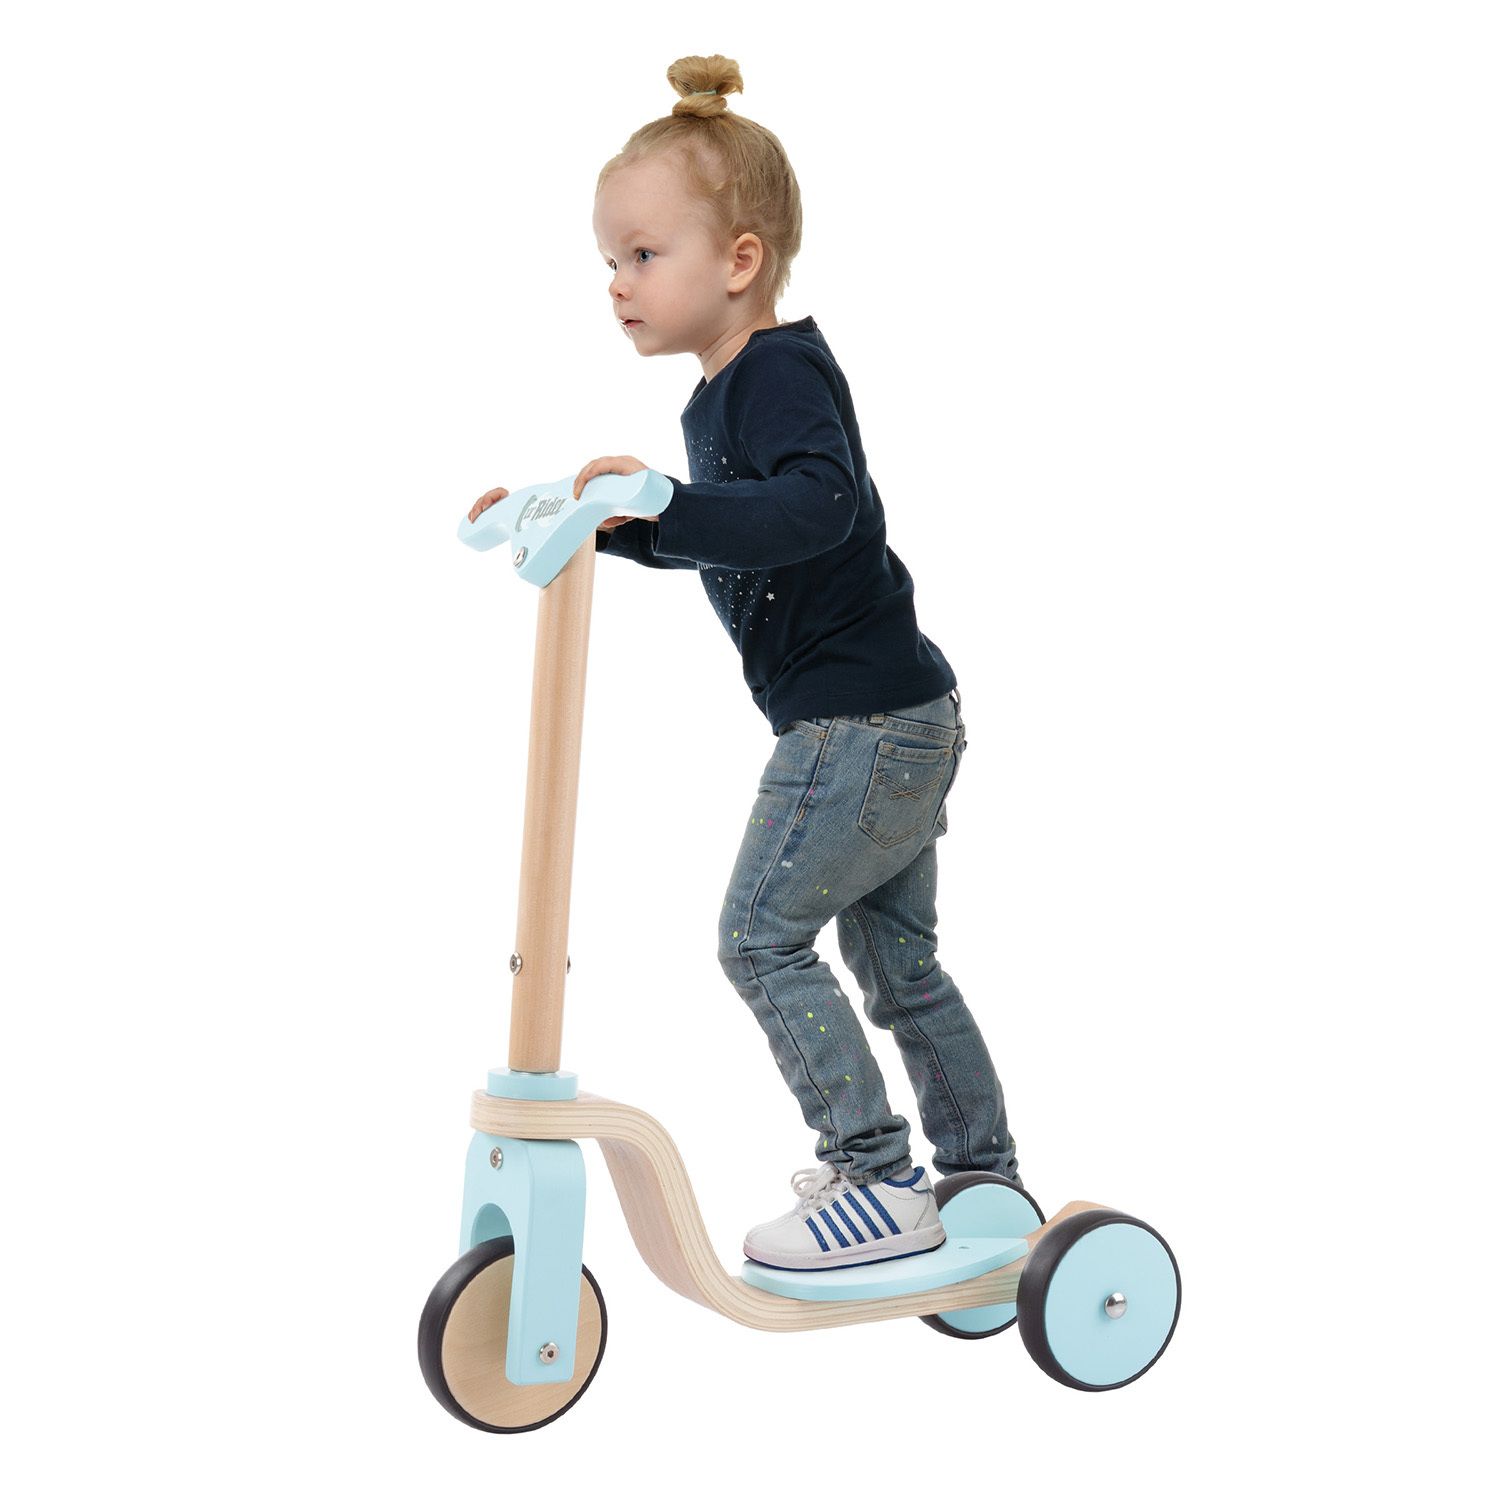 Детский деревянный 3-колесный самокат Lil' Rider для начинающих Lil' Rider цена и фото